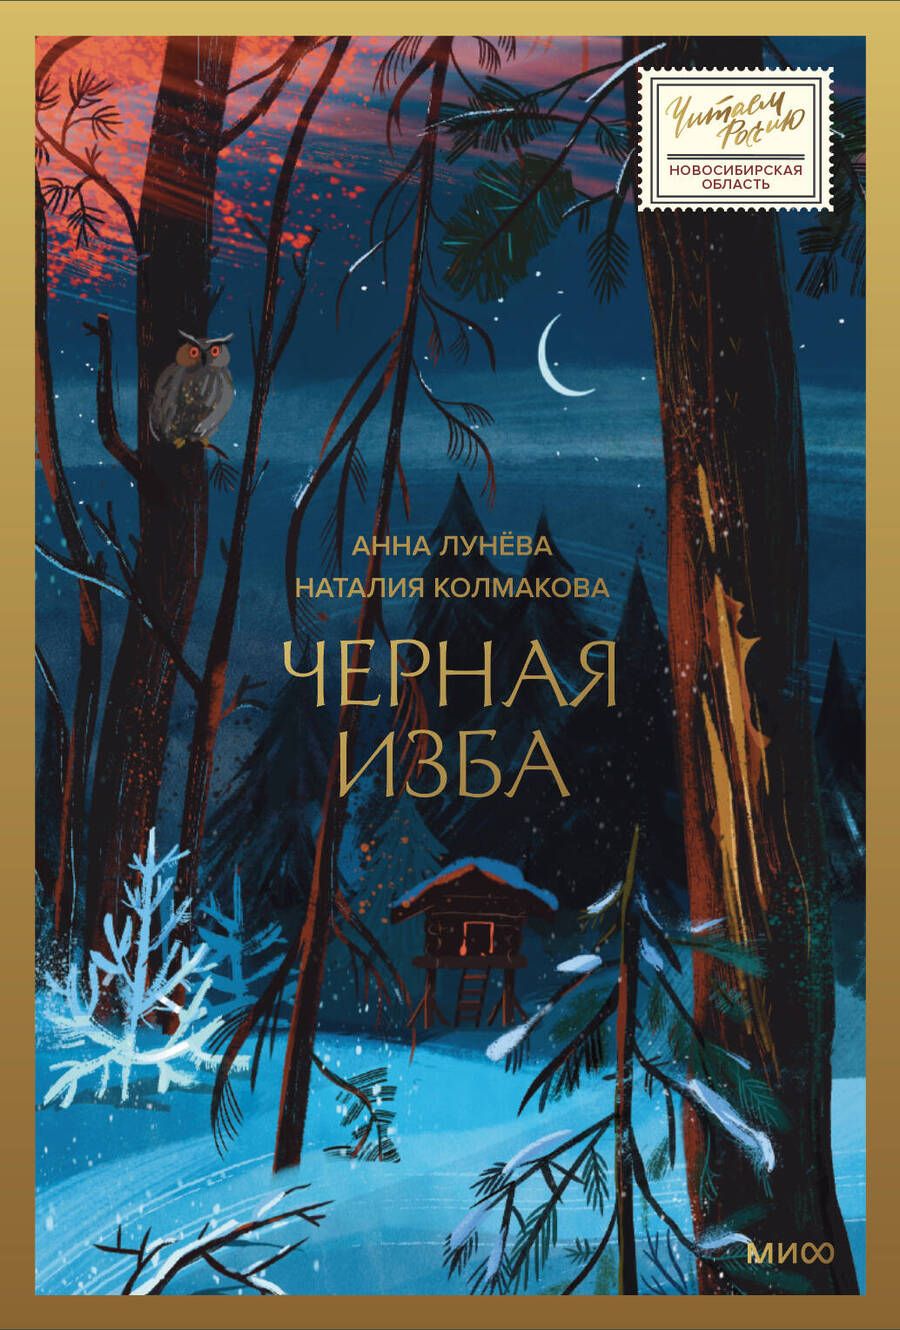 Обложка книги "Лунёва, Колмакова: Черная изба"